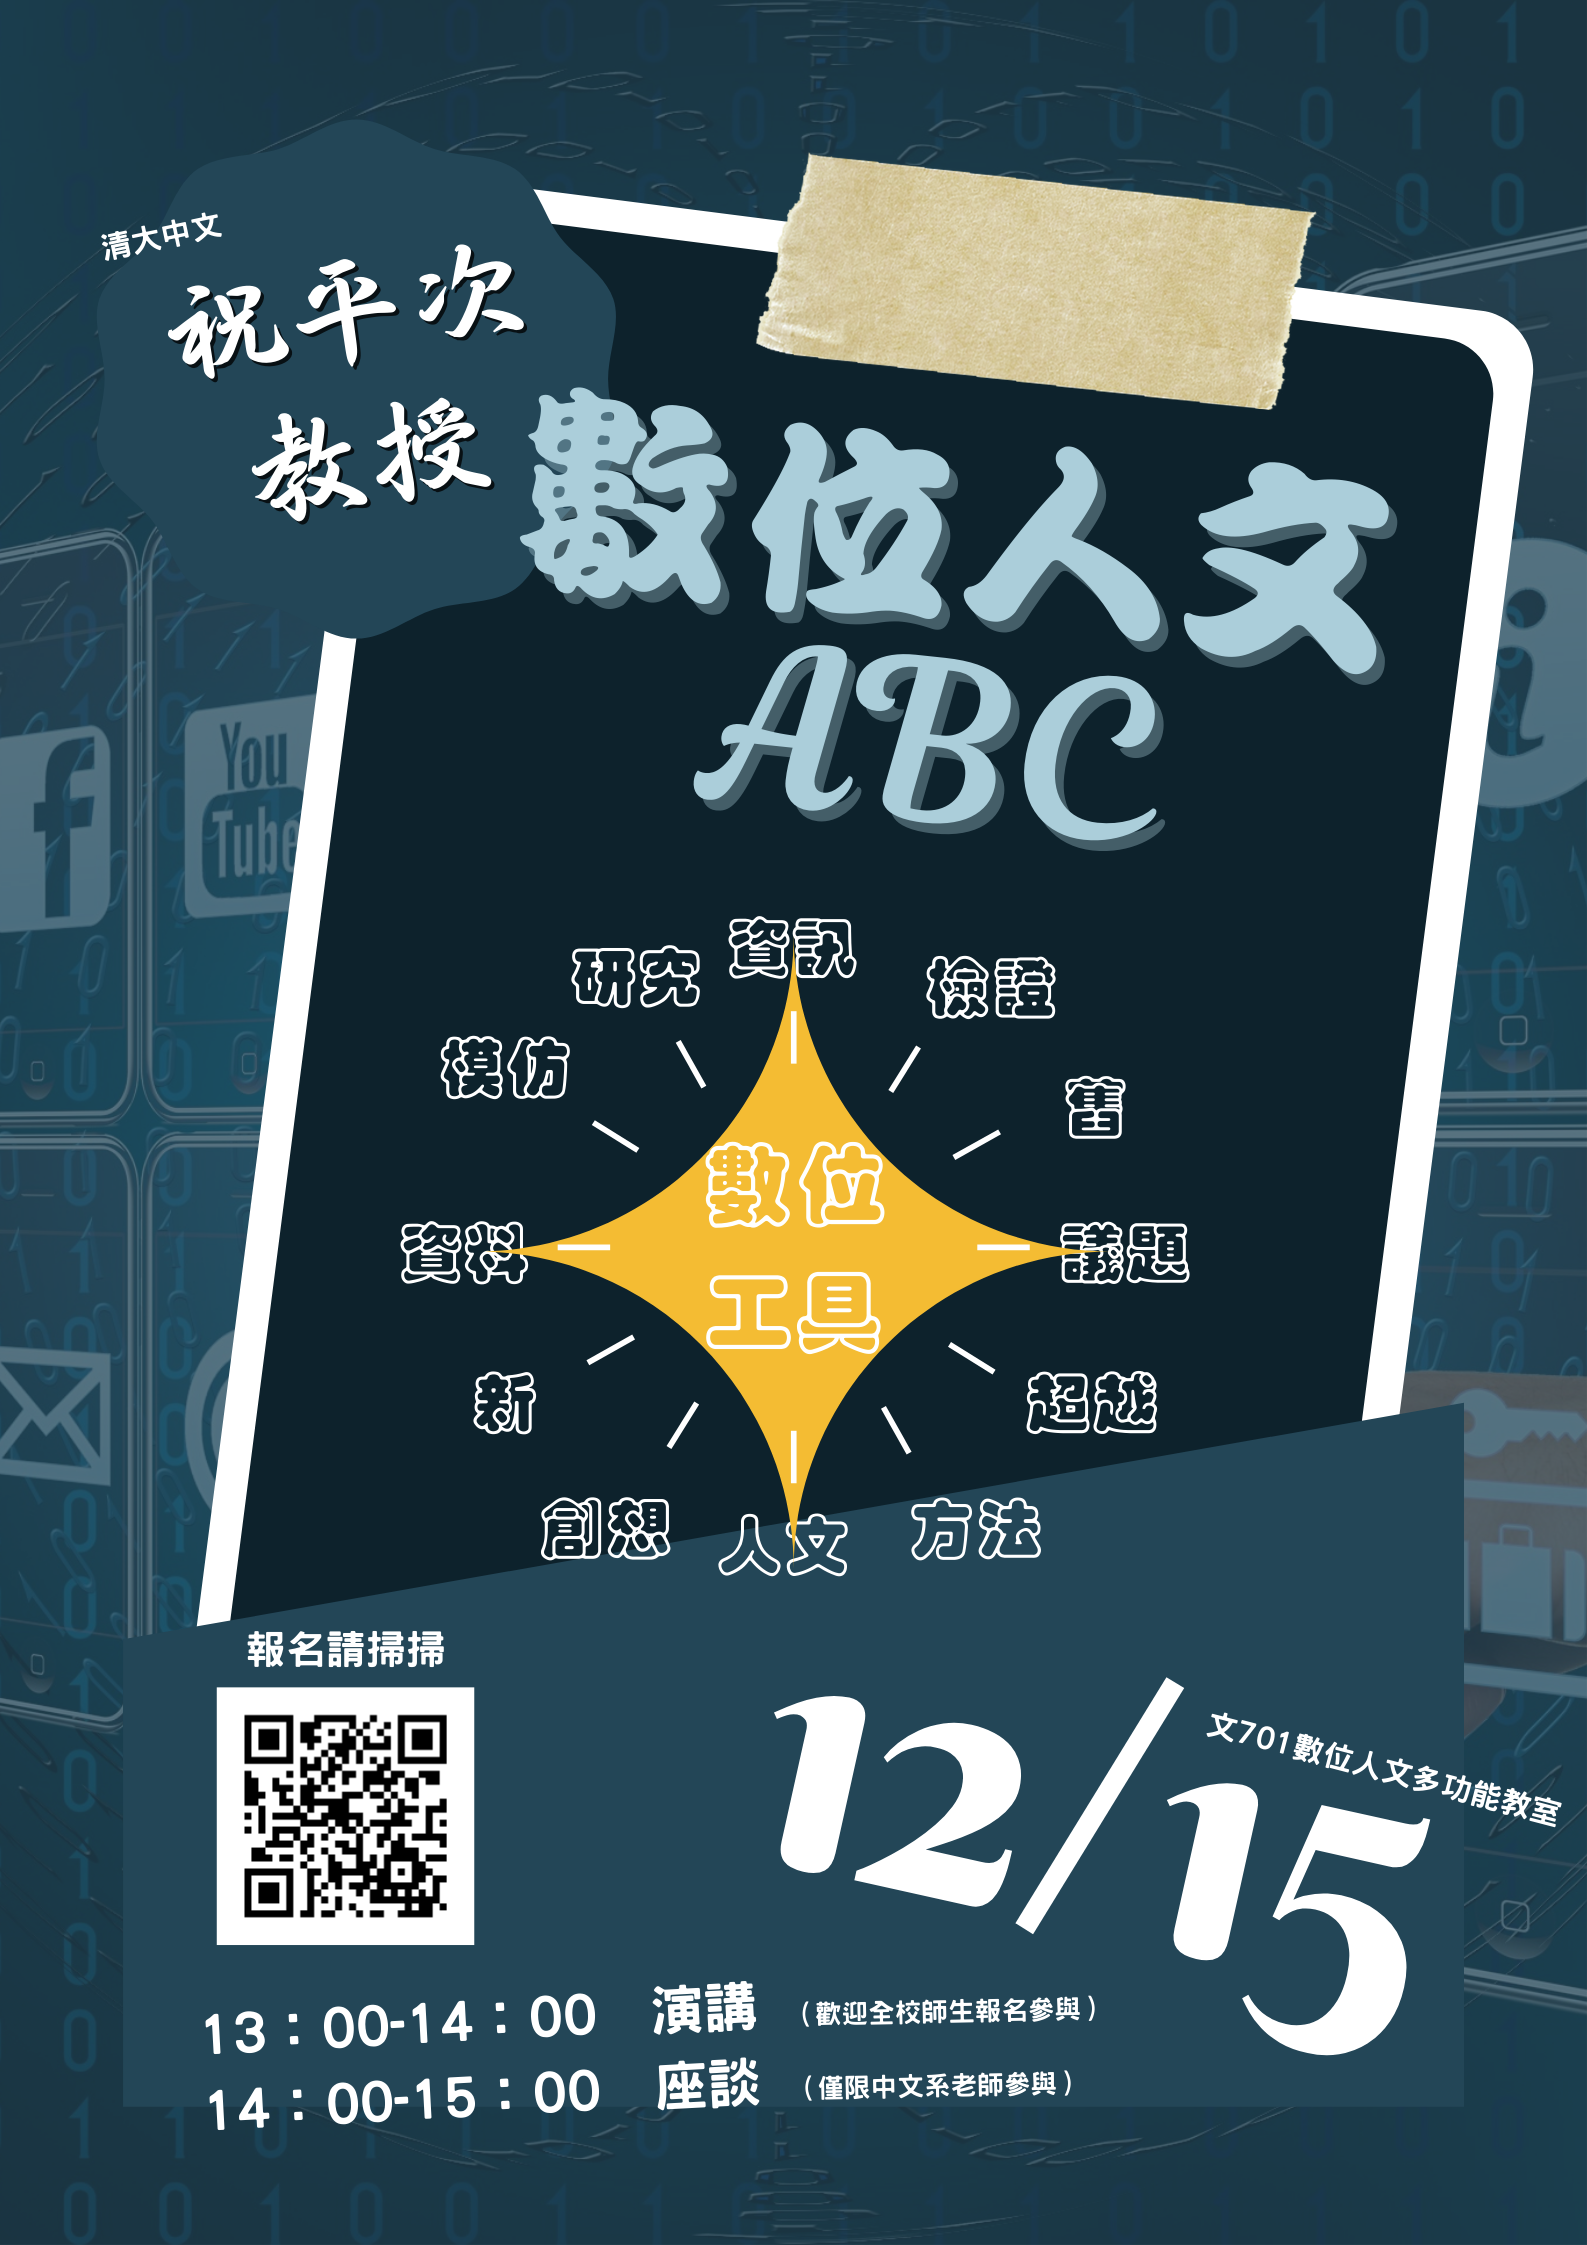 2021/12/15「數位人文ABC」專題演講